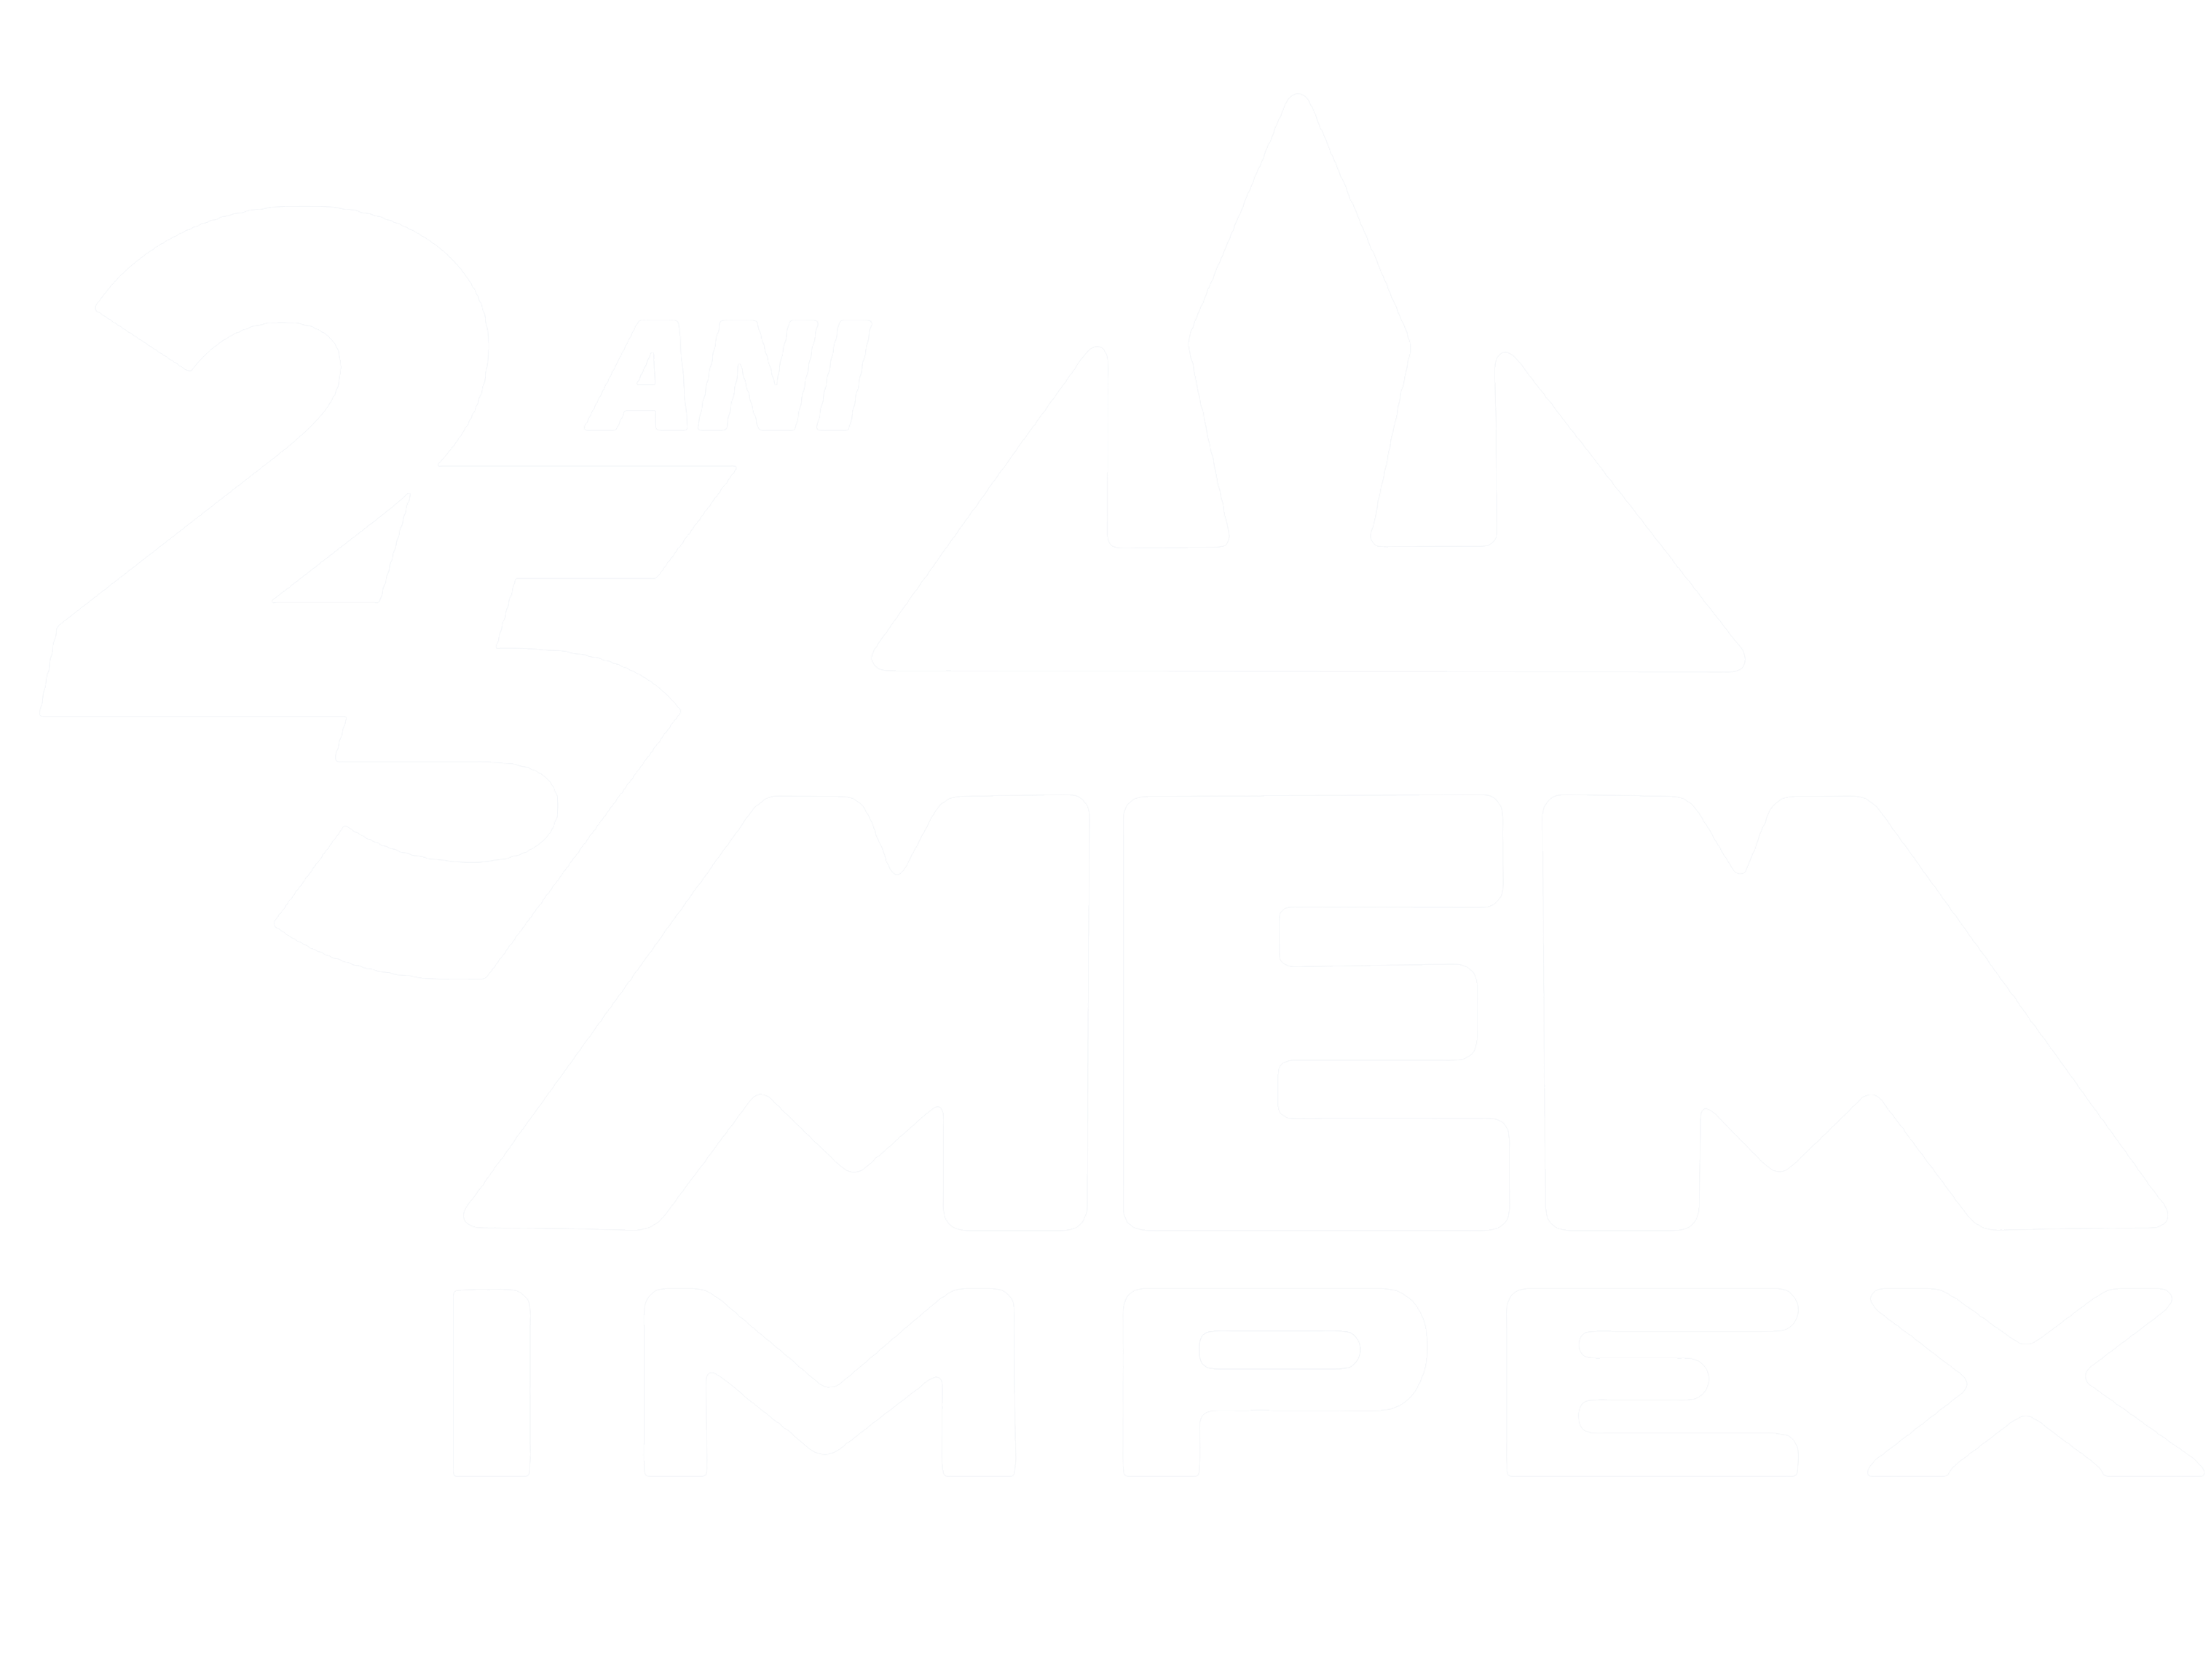 MEM IMPEX